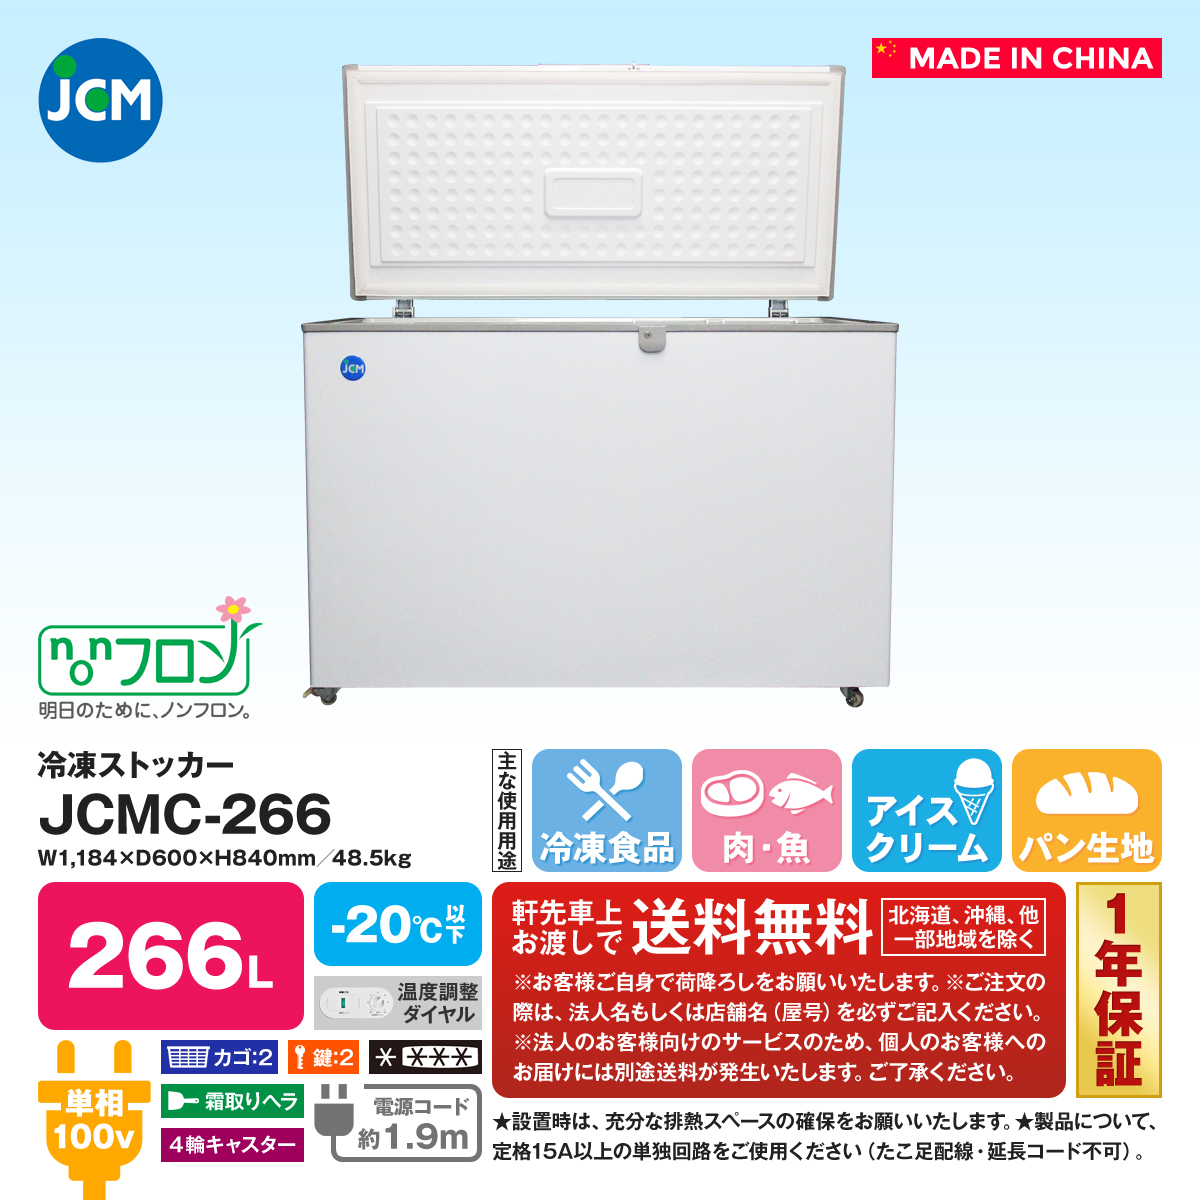 有限会社ユウキ / 冷凍ストッカー『JCMC-266』